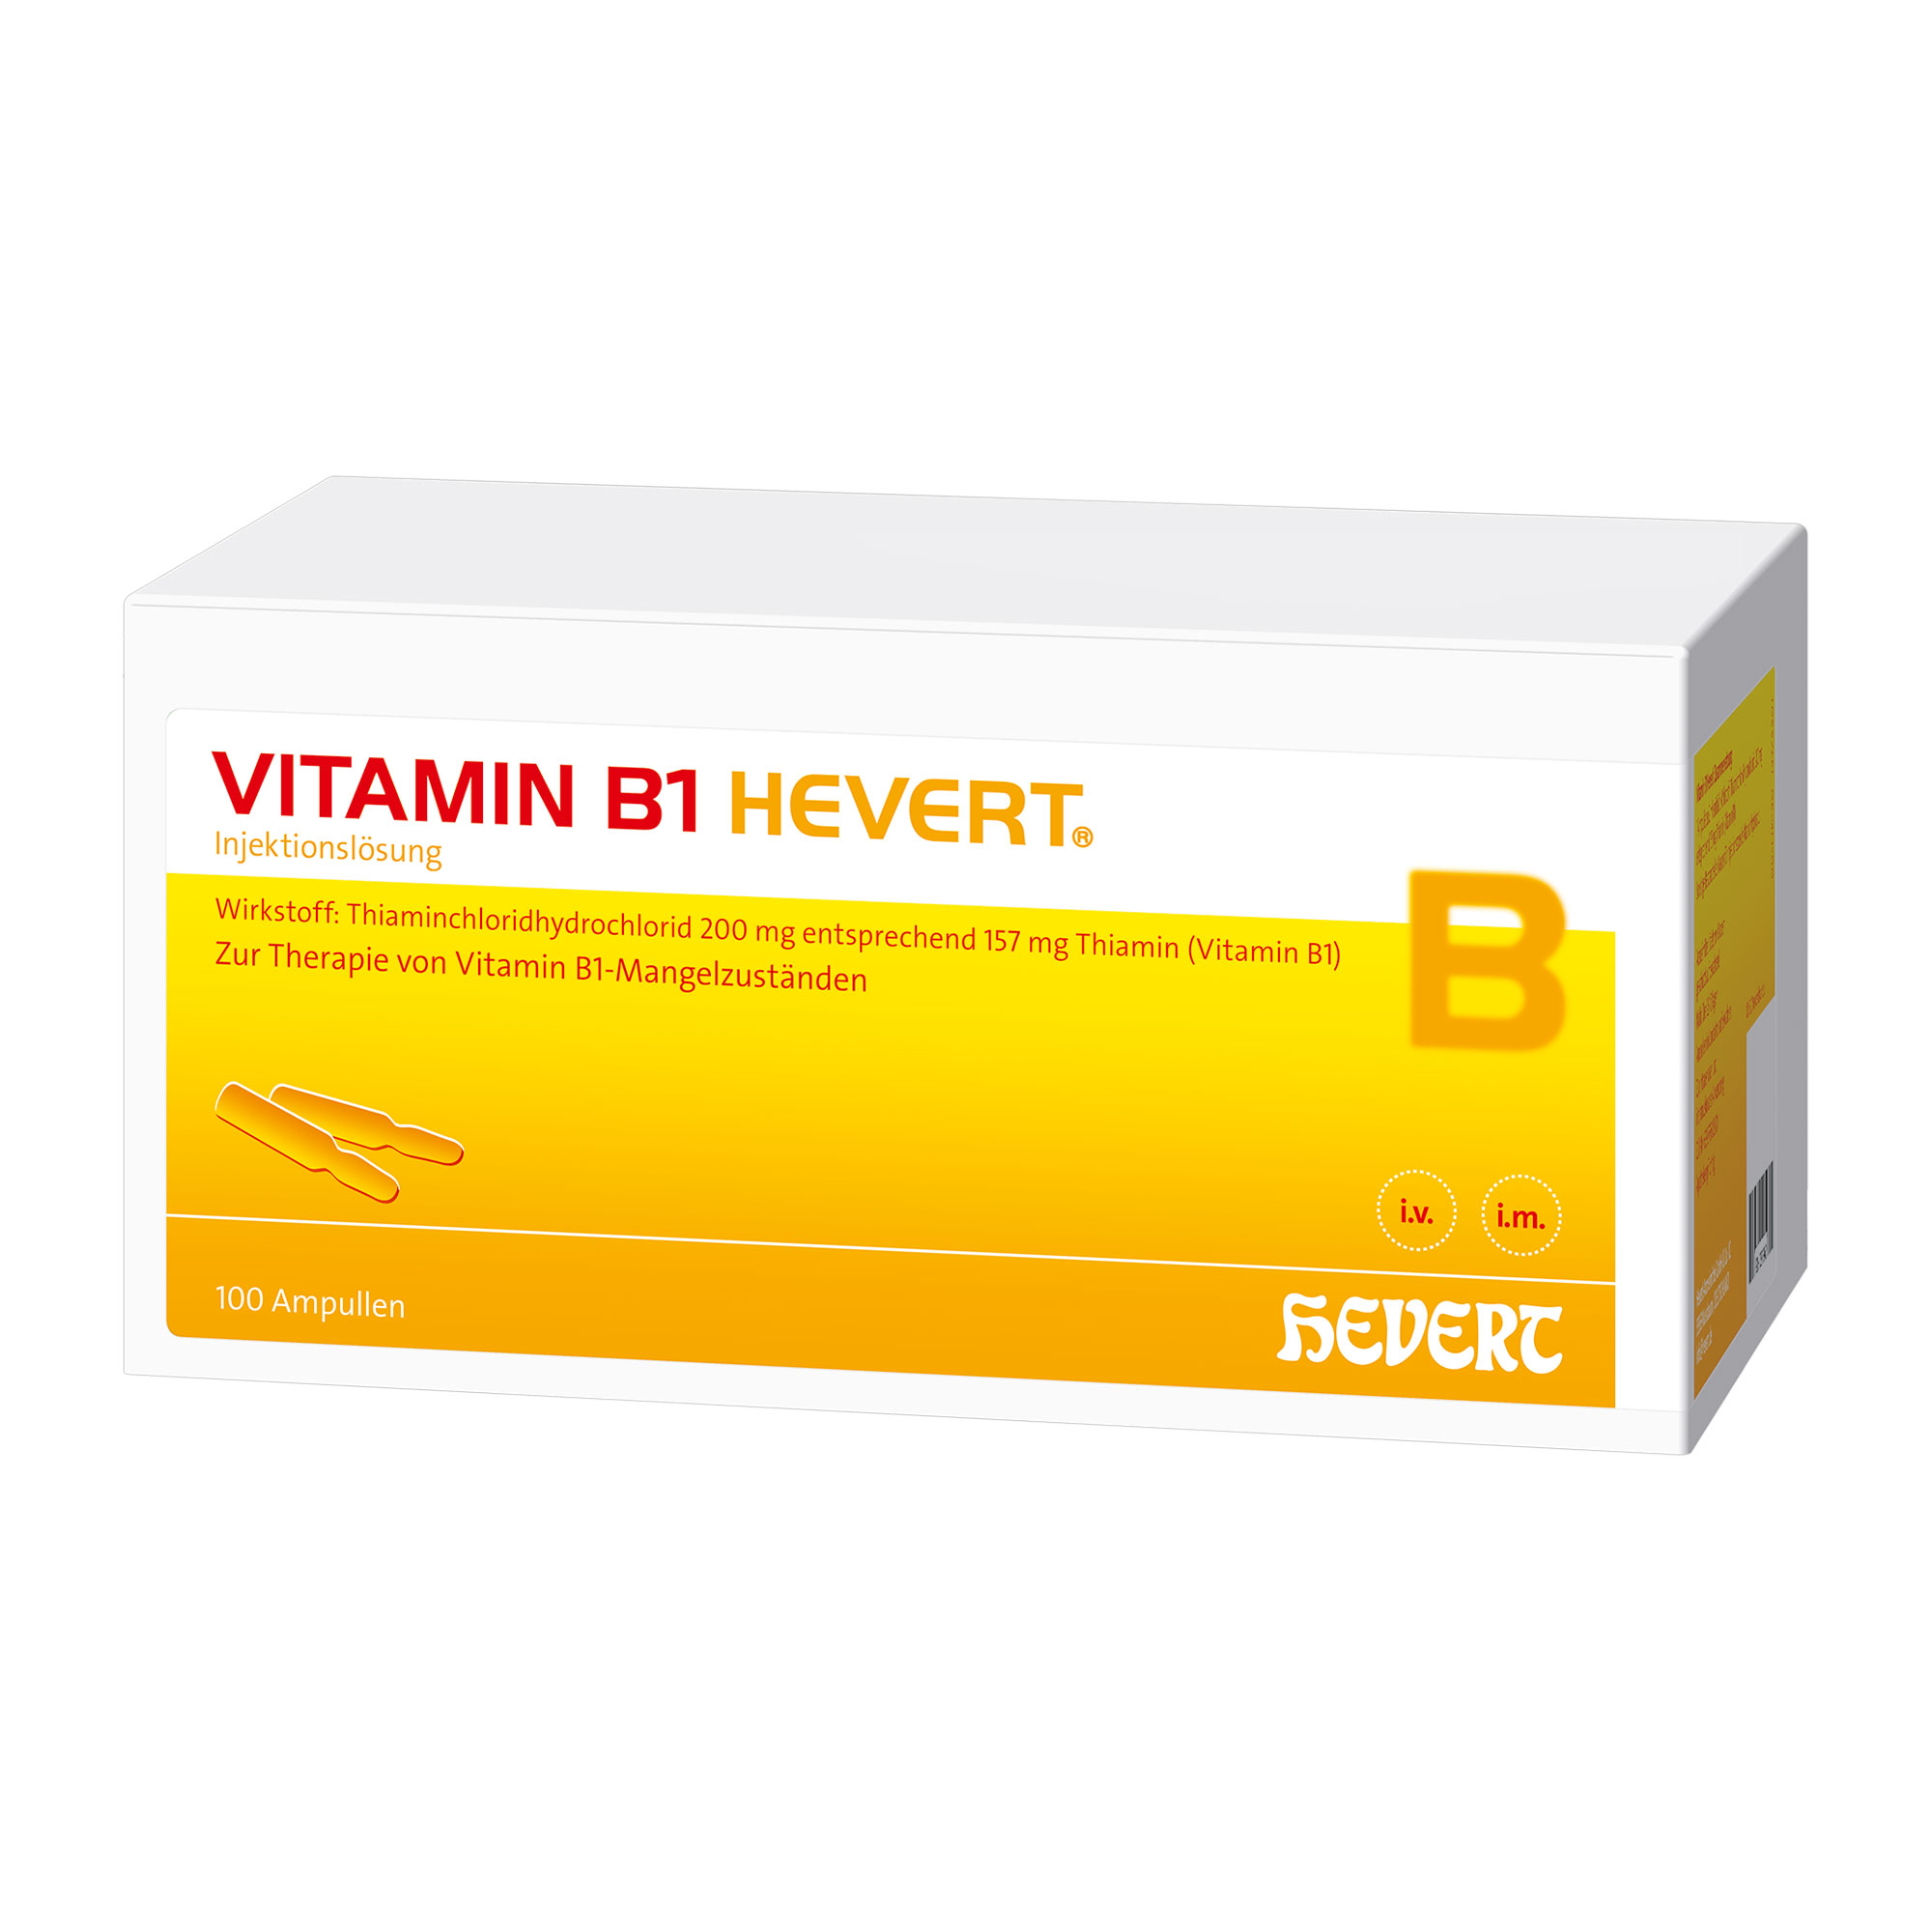 Vitaminpräparat. Zur Behandlung von durch Vitamin B1-Mangel bedingte Erkrankungen.